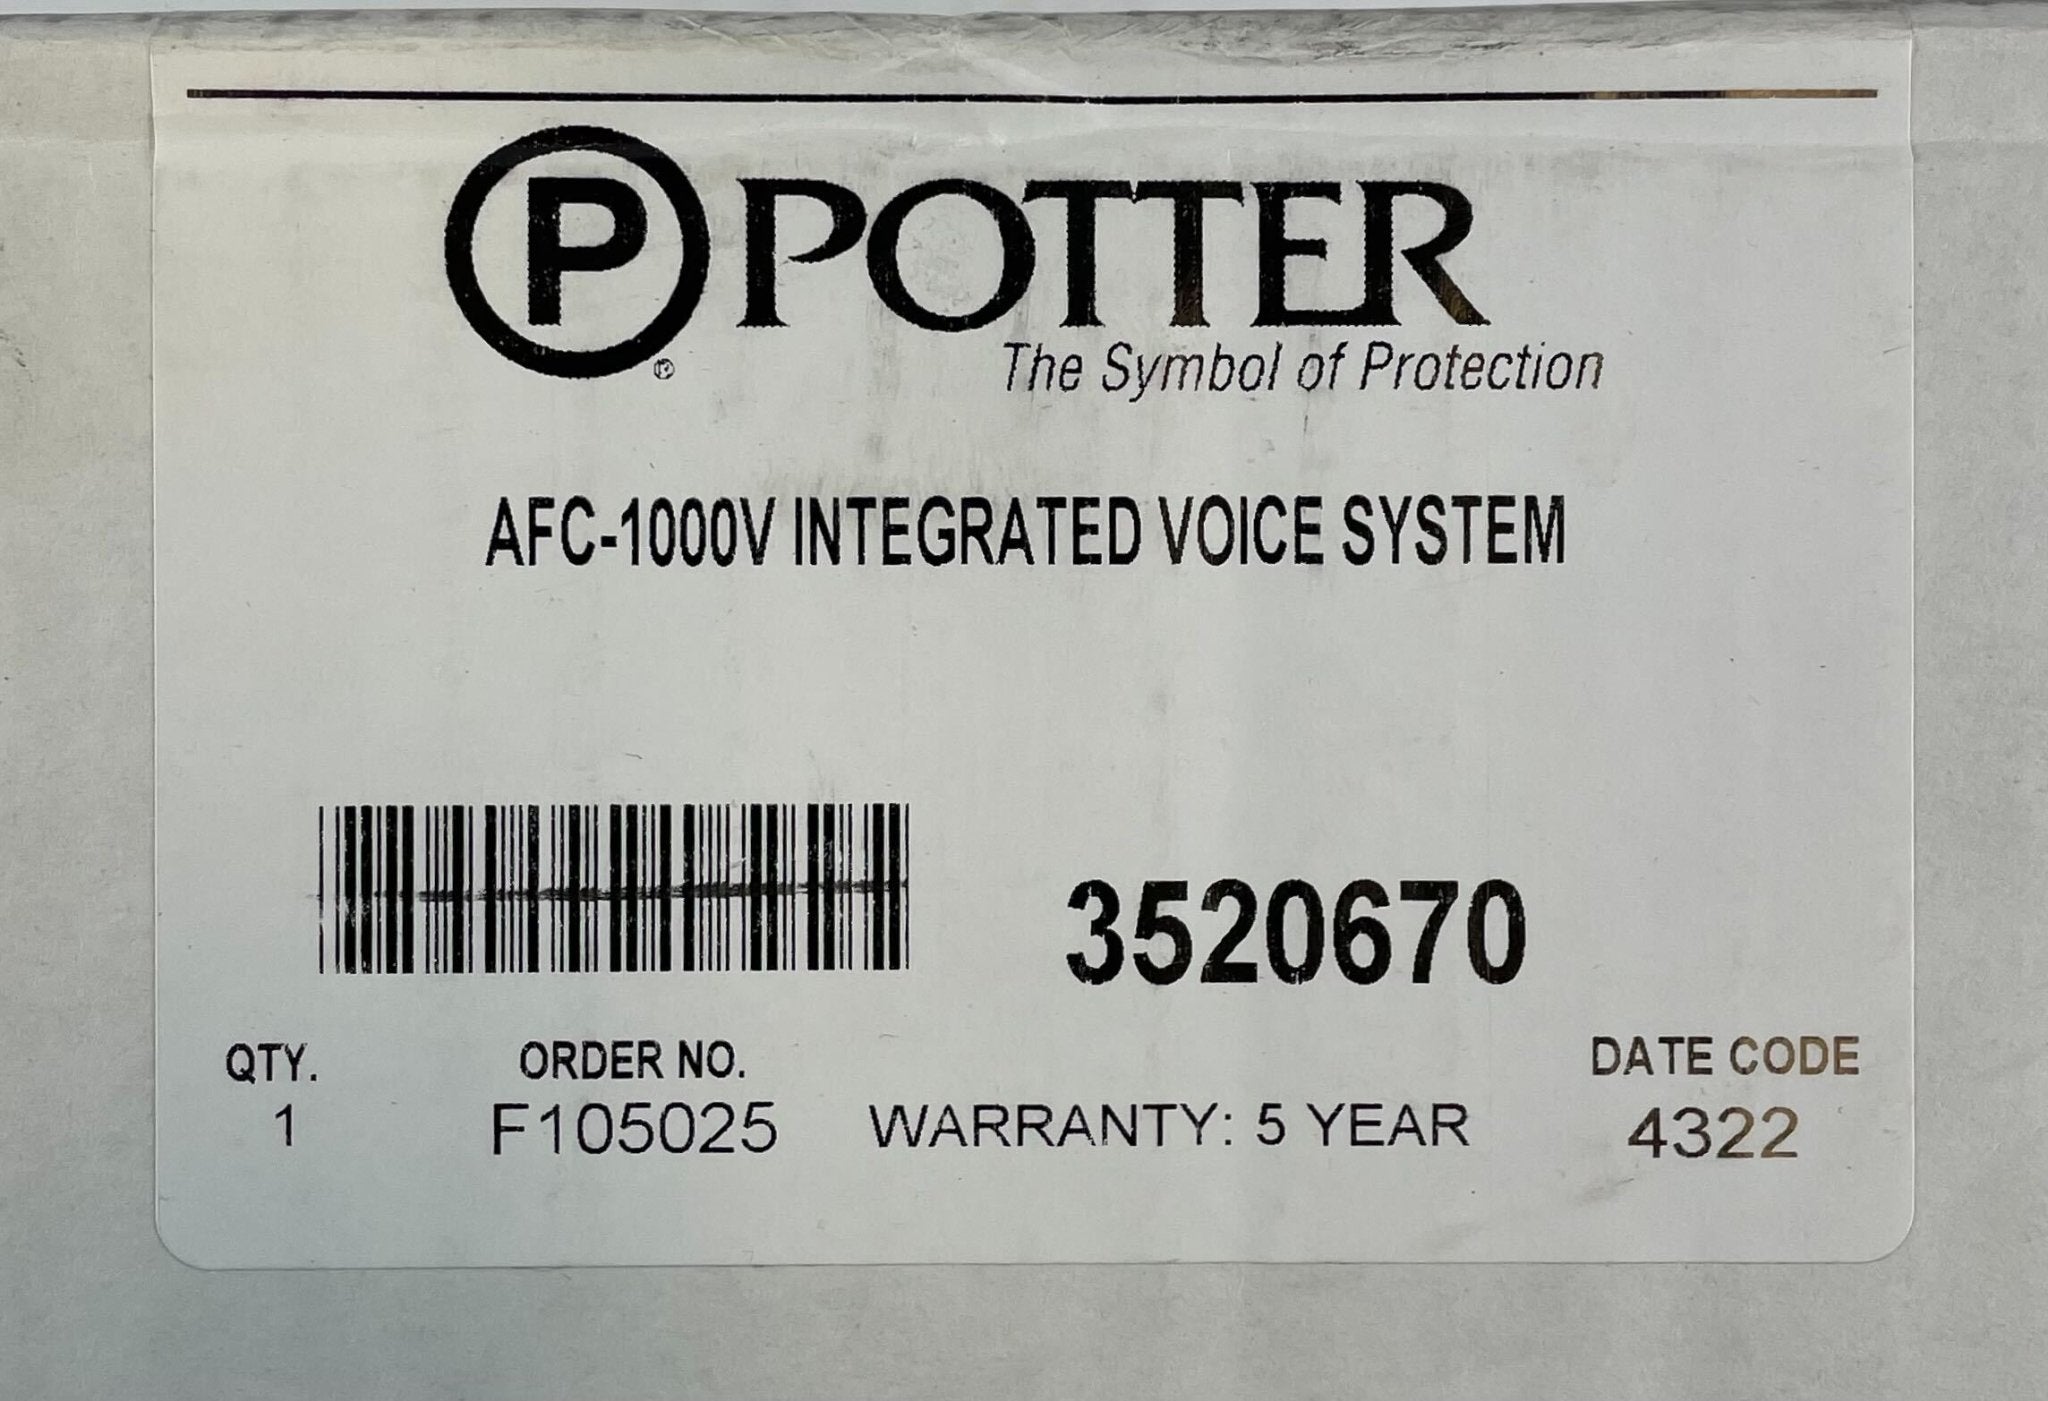 Potter AFC-1000V - The Fire Alarm Supplier